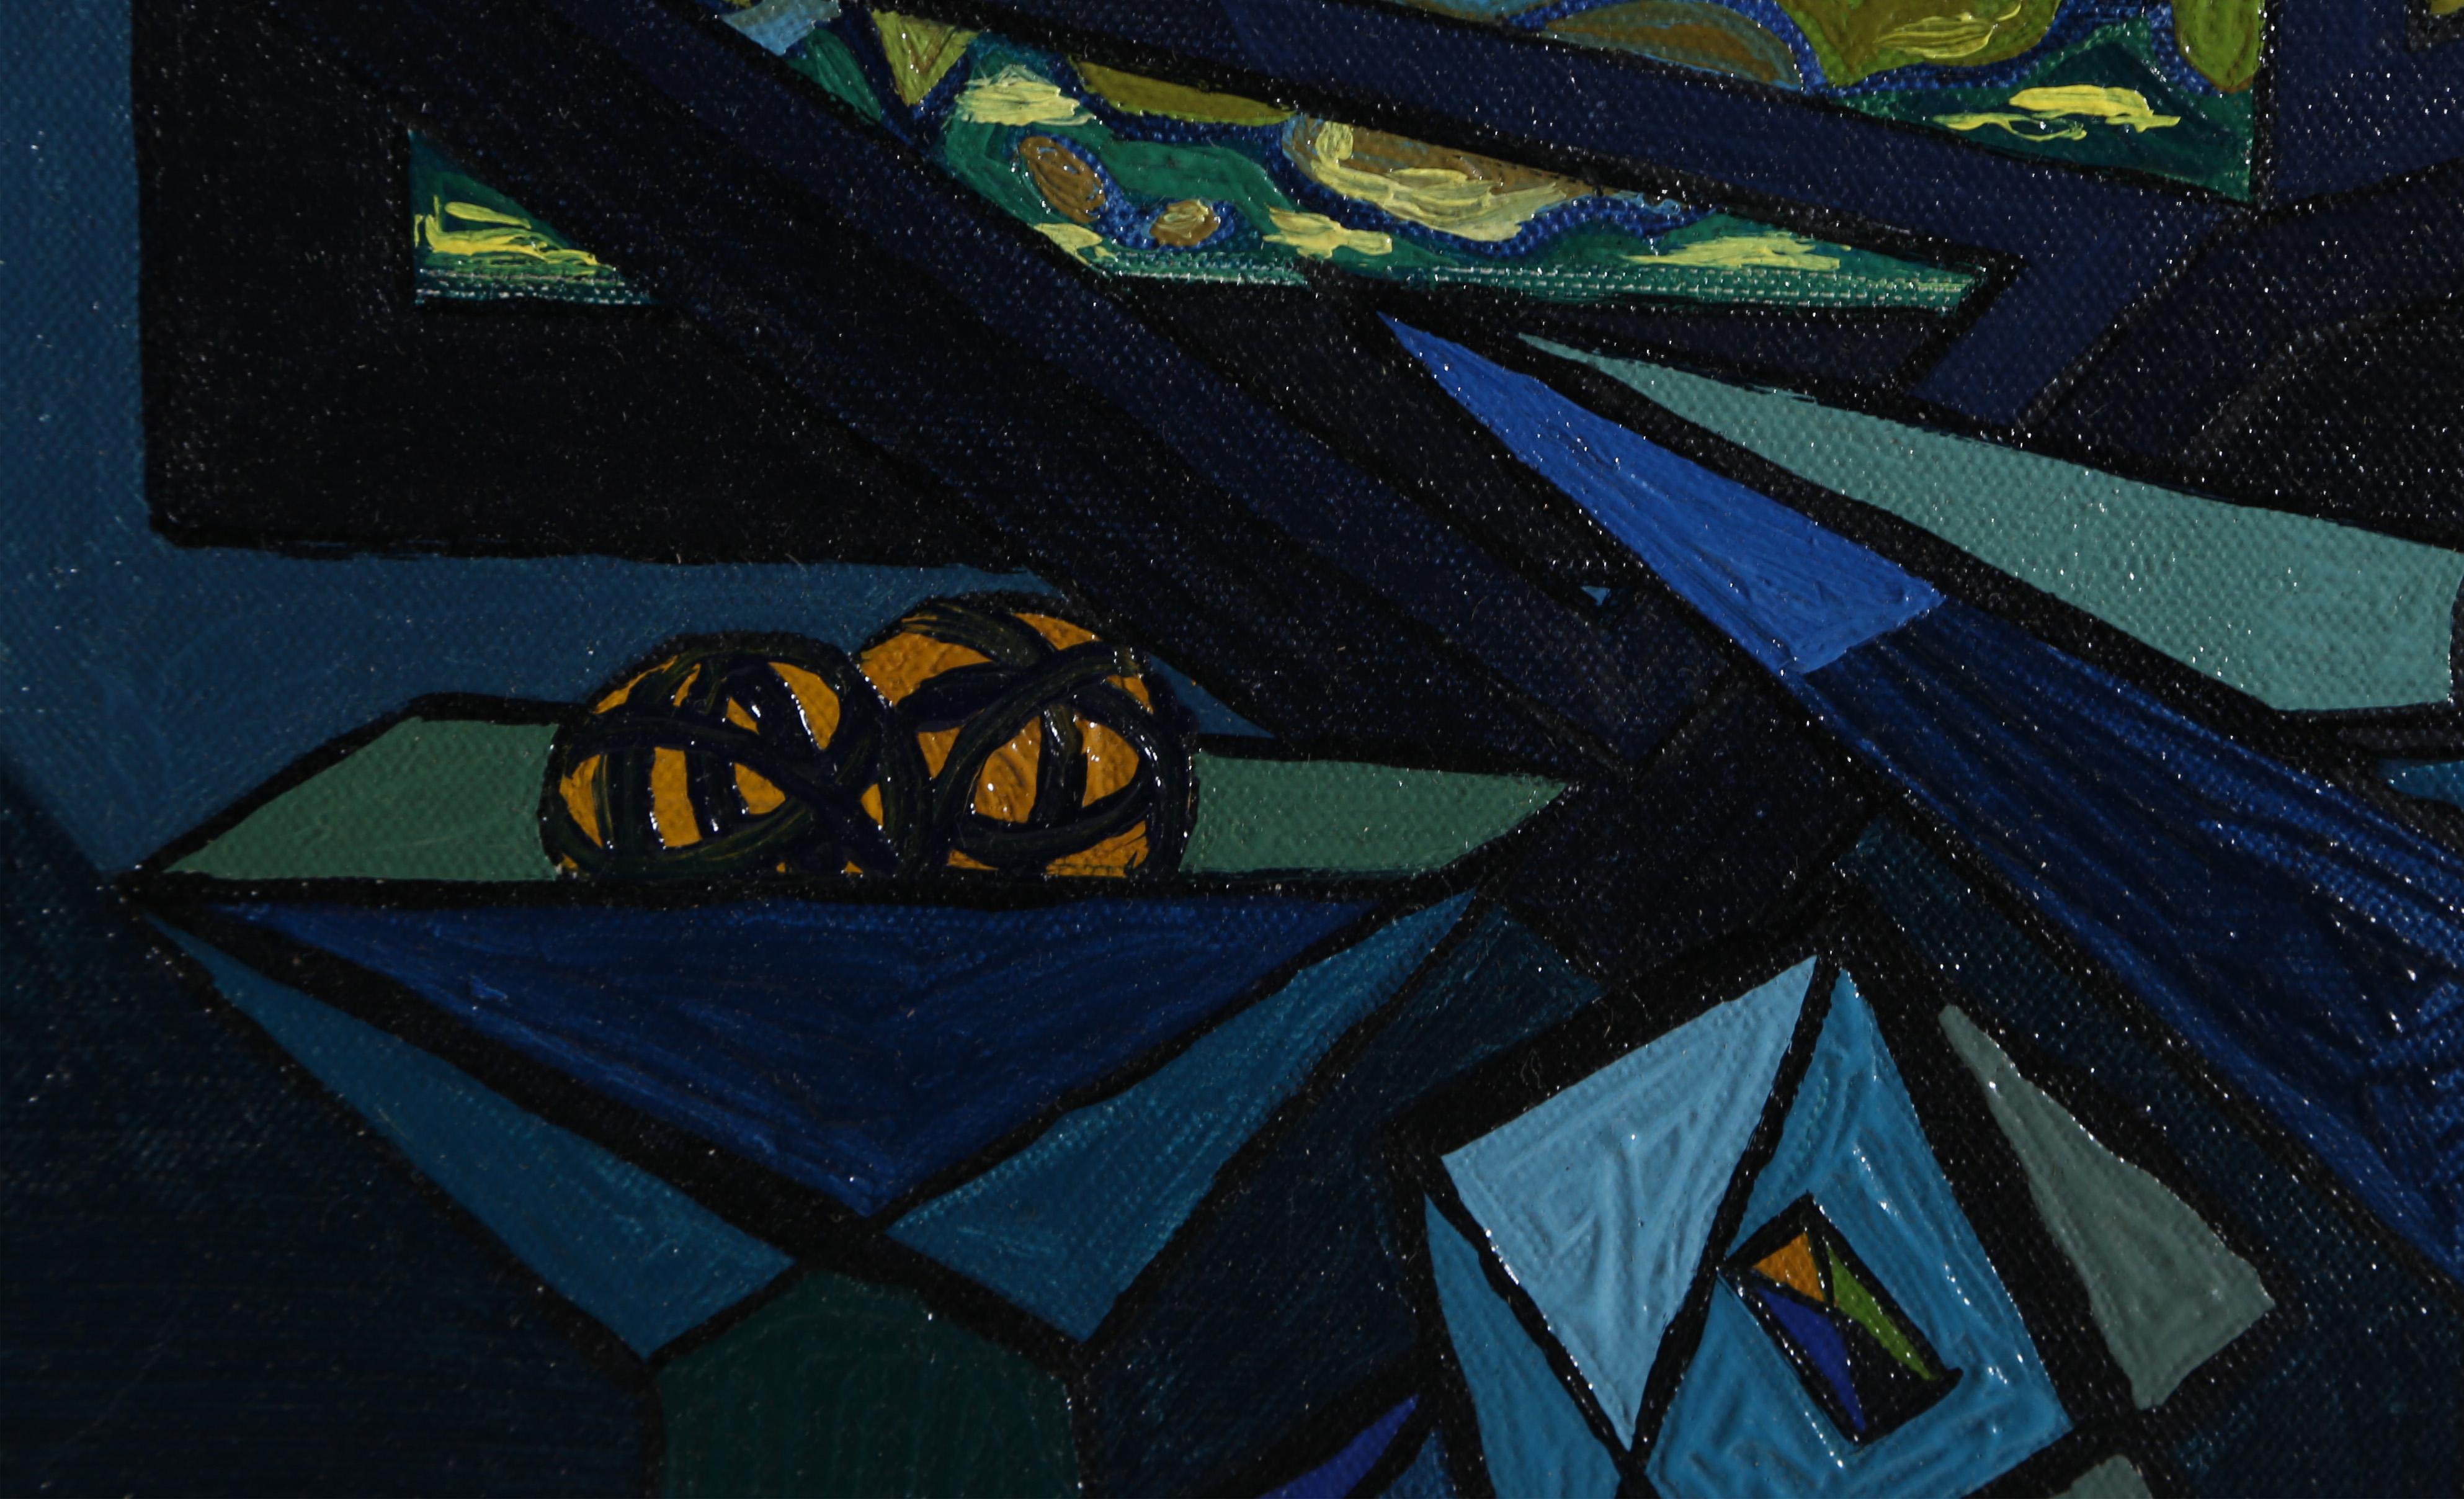 Original Öl auf Leinwand mit einem kubistischen Stillleben von Benjamin Benno, Amerikaner (1901 - 1980). In den frühen 1930er Jahren hatte er sich einen Ruf als Mitglied der internationalen Avantgarde erworben und stellte mit den bedeutendsten